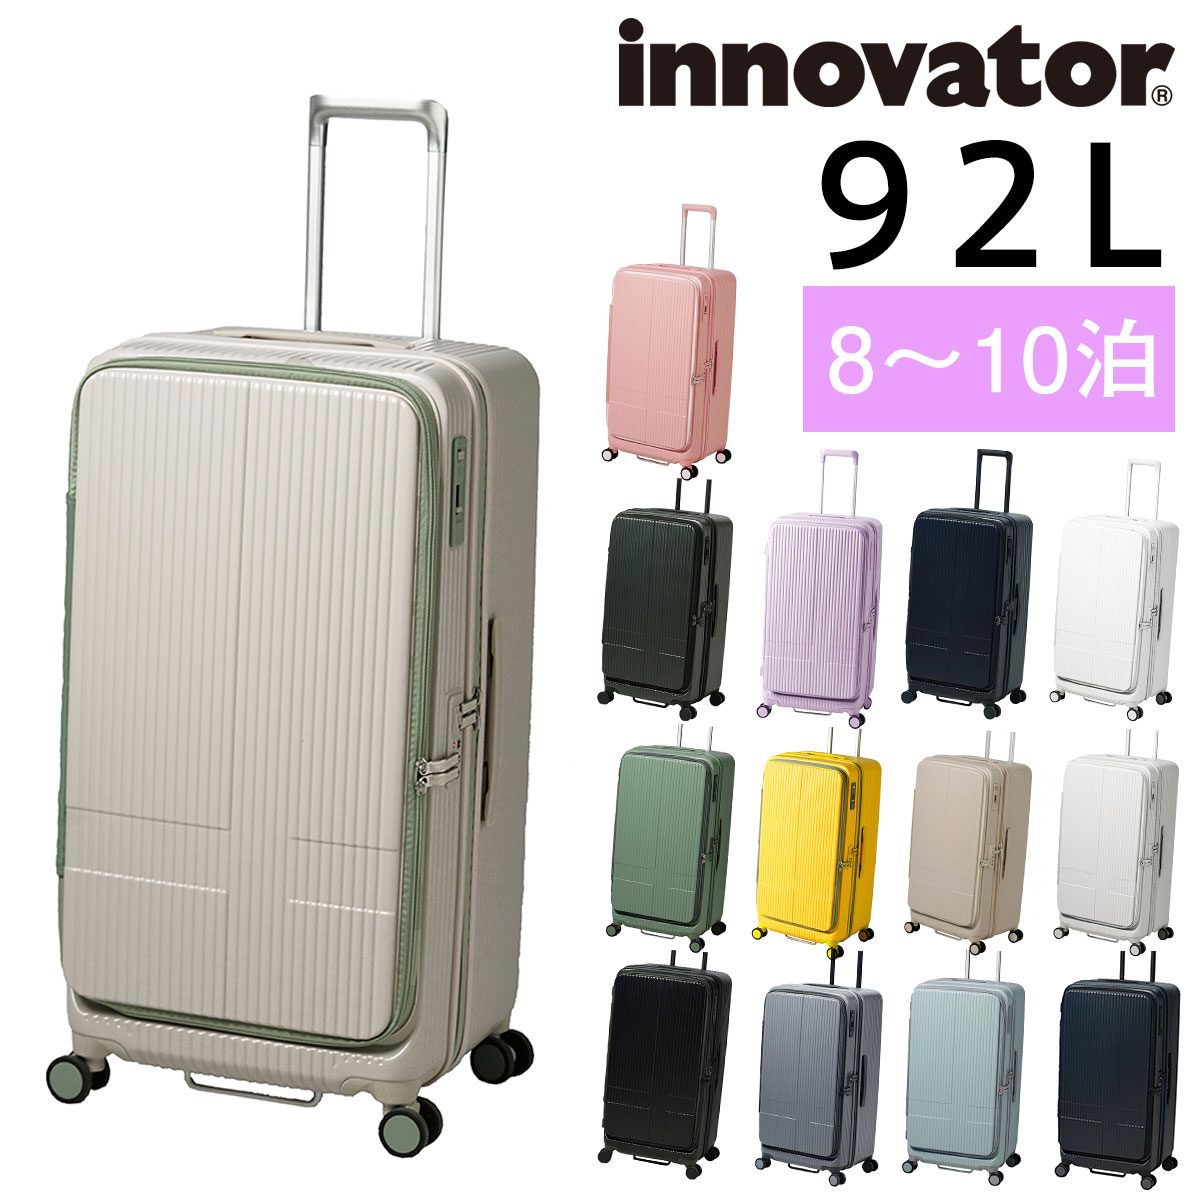 イノベーター スーツケース キャリーケース innovator inv750dor 92L ビジネスキャリー キャリーバッグ ハード メンズ レディース キッズ